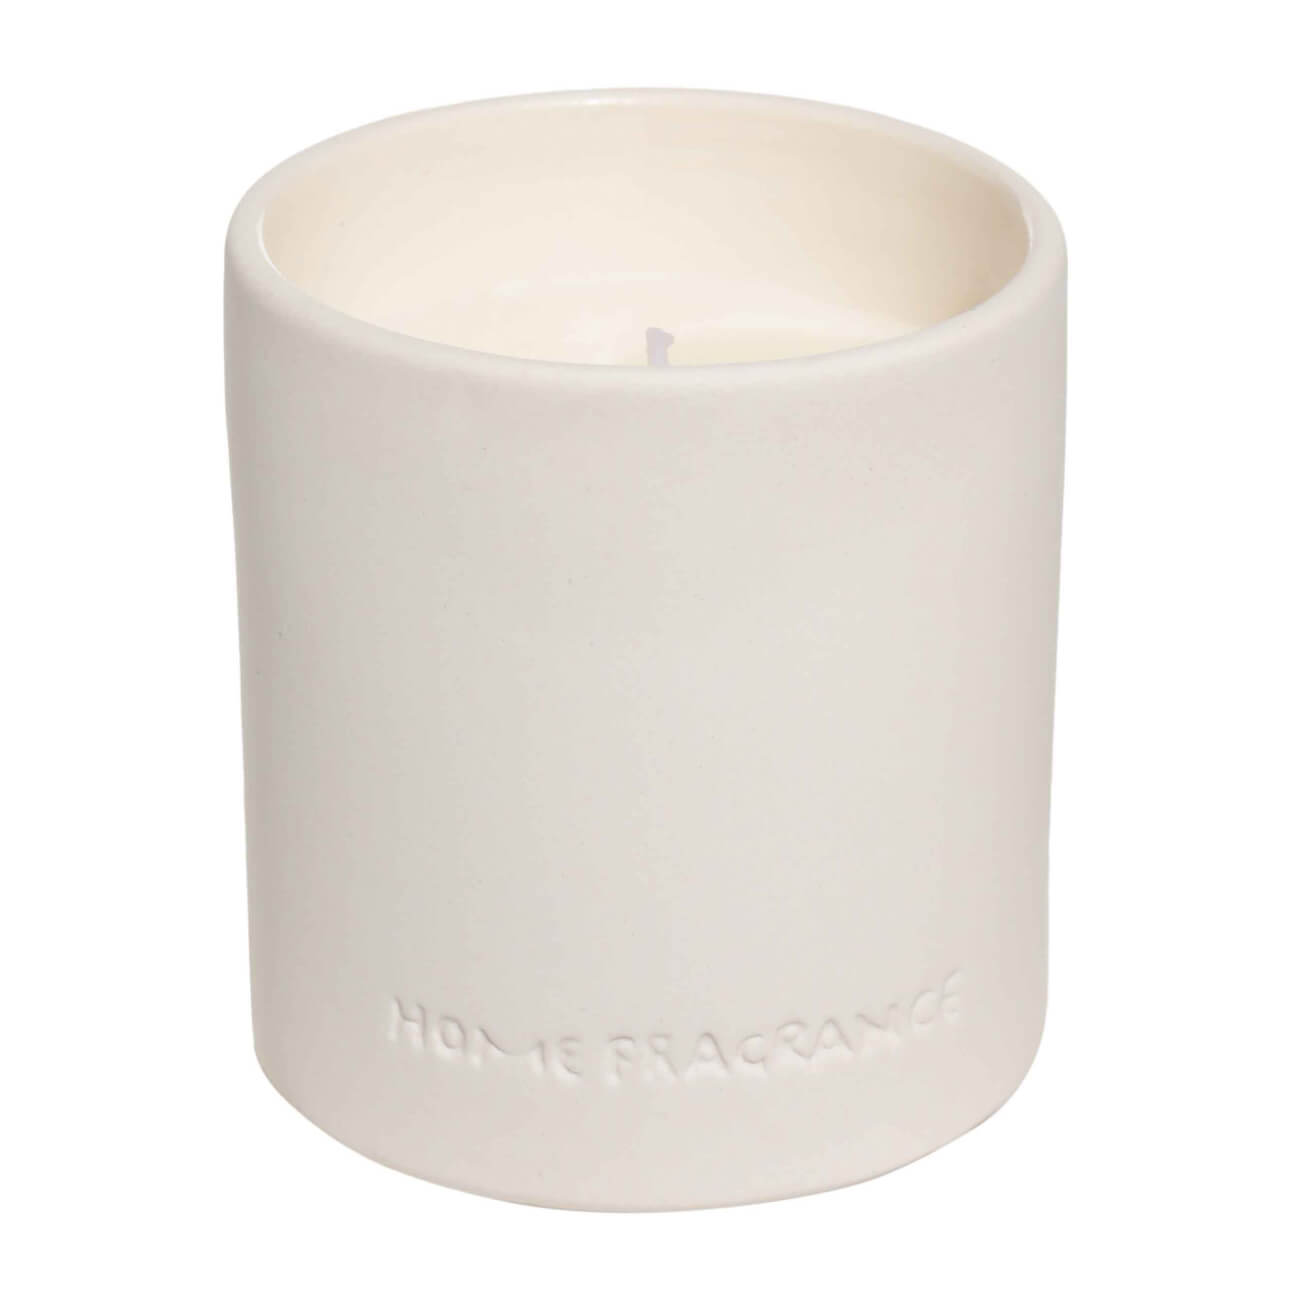 Kuchenland Свеча ароматическая, 9 см, в подсвечнике, керамика, белая, Neroli portofino, B&W ароматическая свеча вещицы